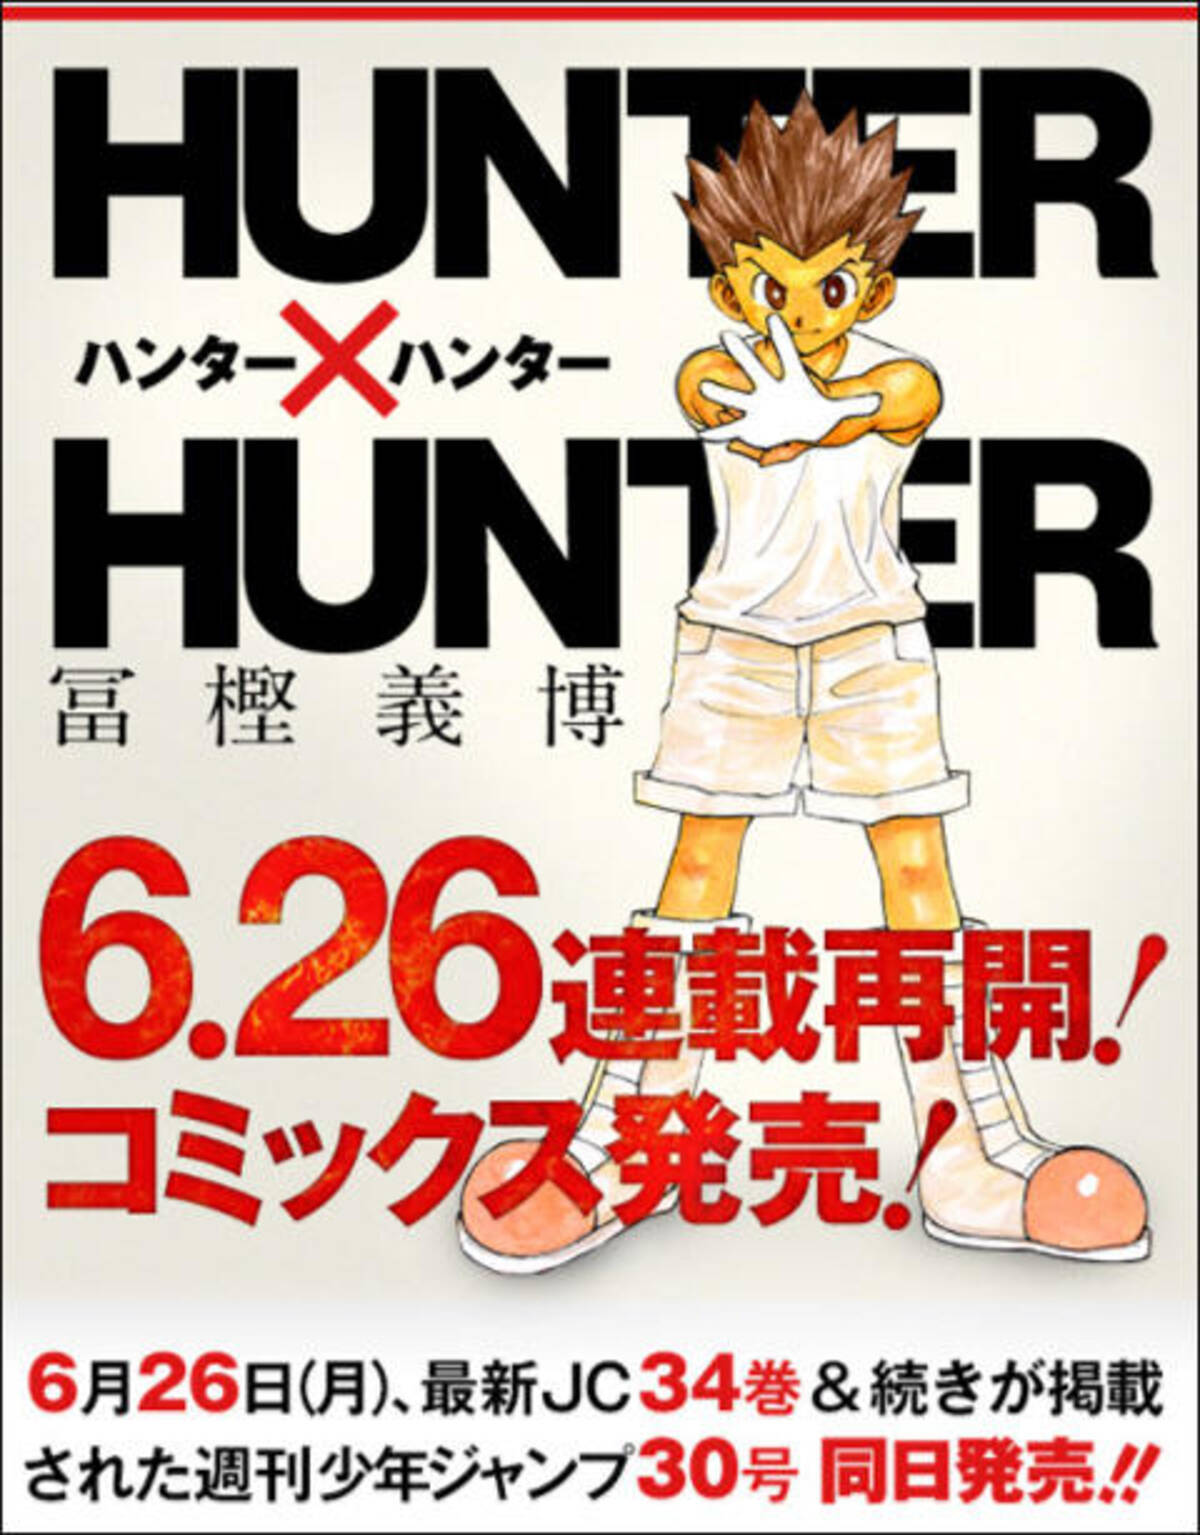 冨樫義博 Hunter Hunter 復活 ストーリーと 休載歴 をおさらいしておこう 17年5月31日 エキサイトニュース